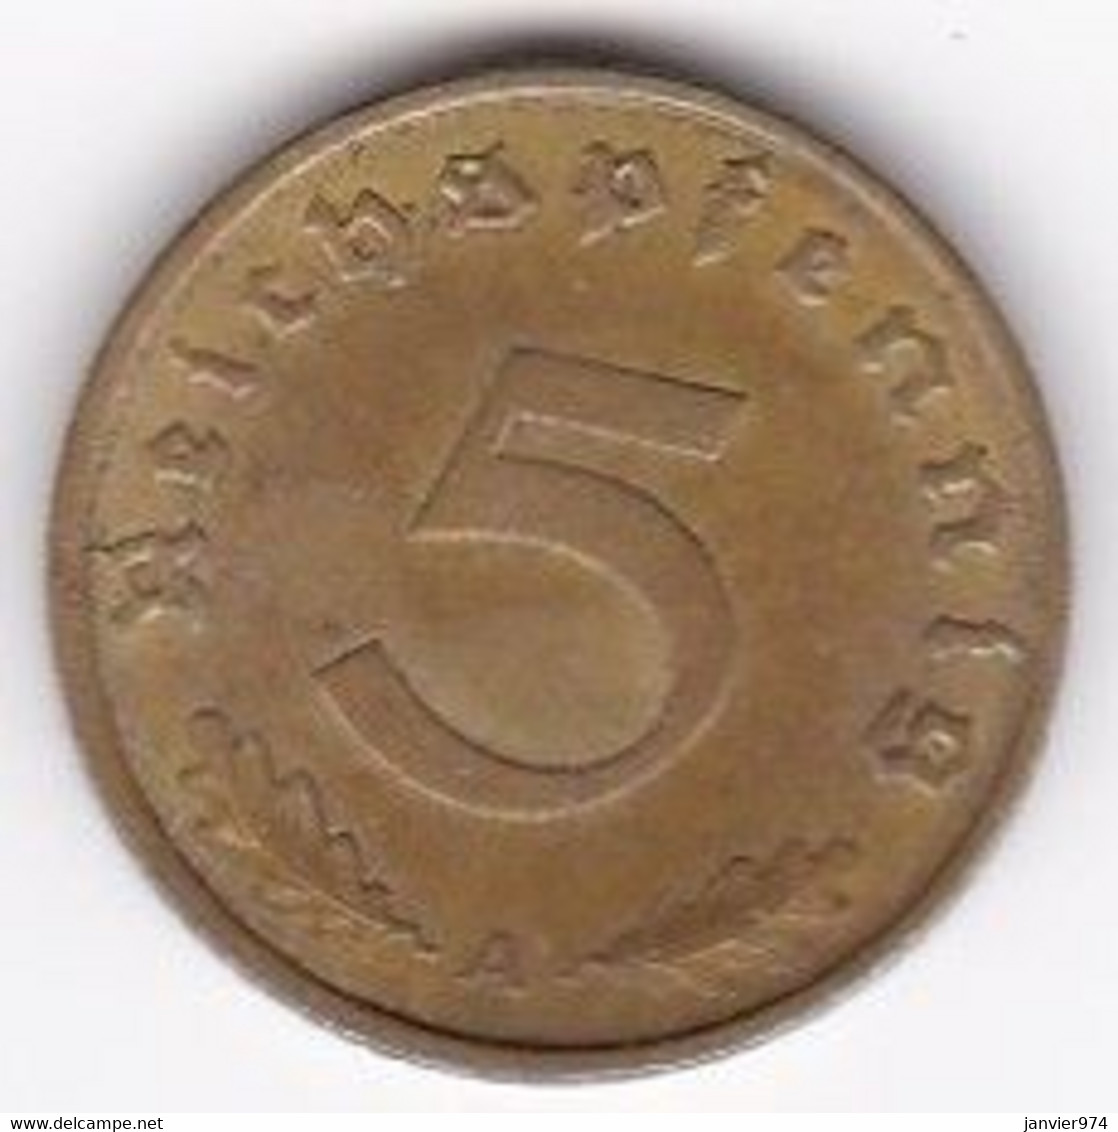 5 Reichspfennig 1937 A (BERLIN). Bronze-aluminium - 5 Reichspfennig